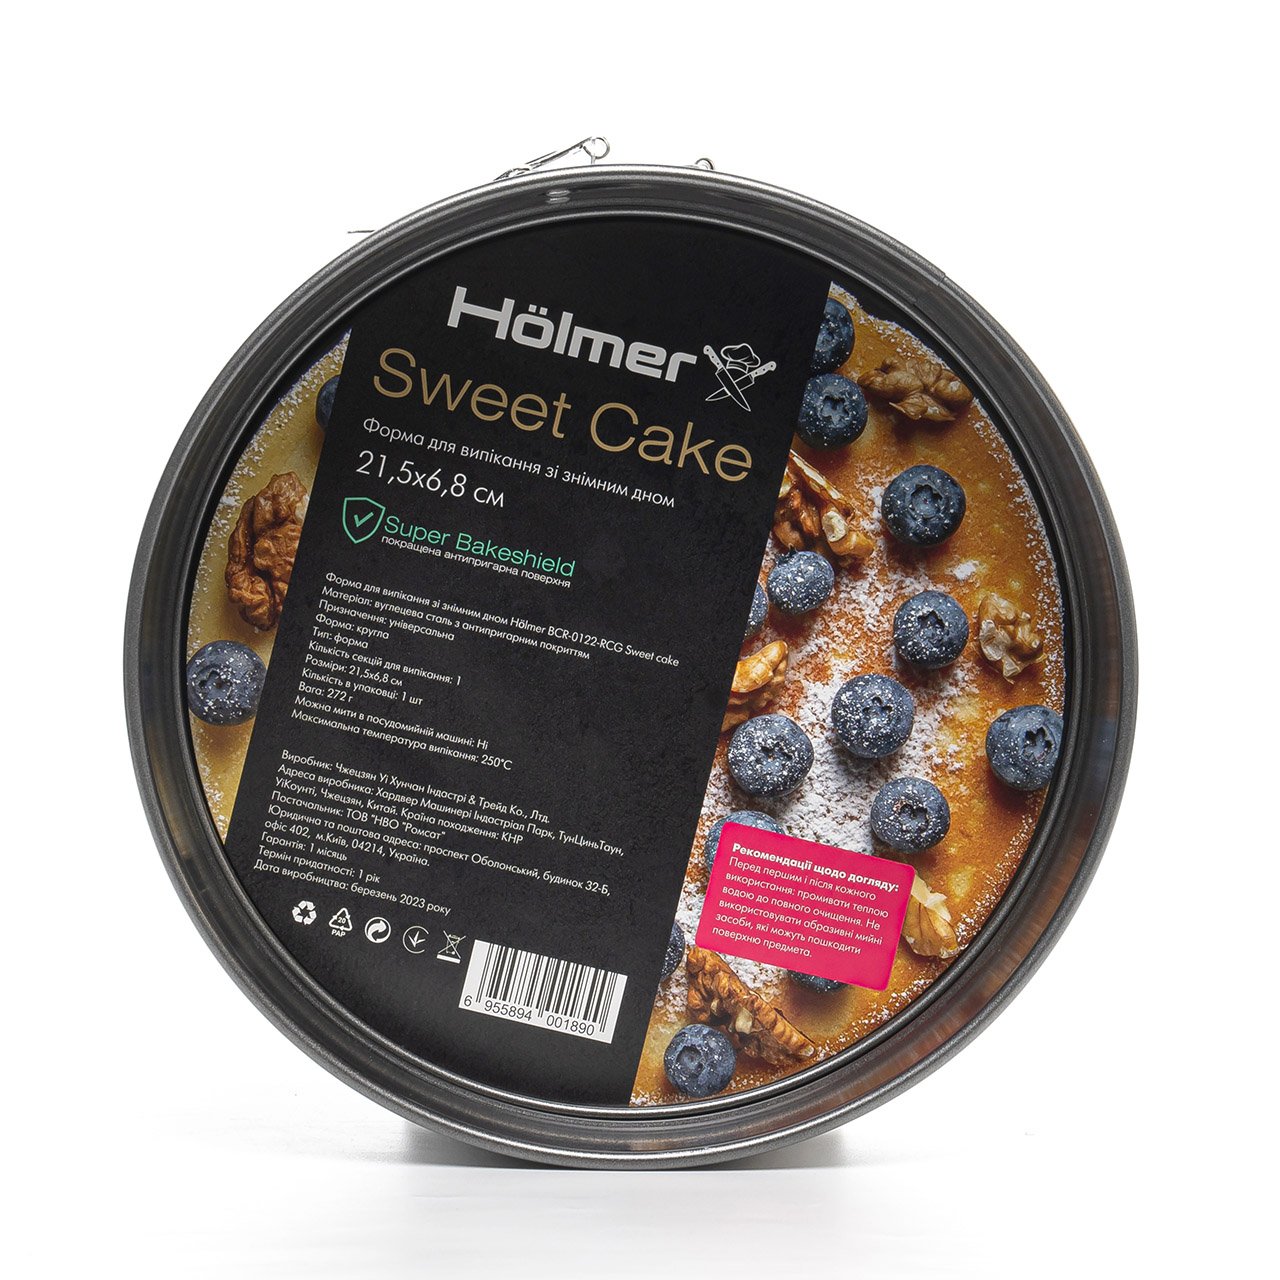 Форма для випікання Holmer BCR-0122-RCG Sweet cake зі знімним дном 21.5 см чорна (BCR-0122-RCG Sweet cake) - фото 5